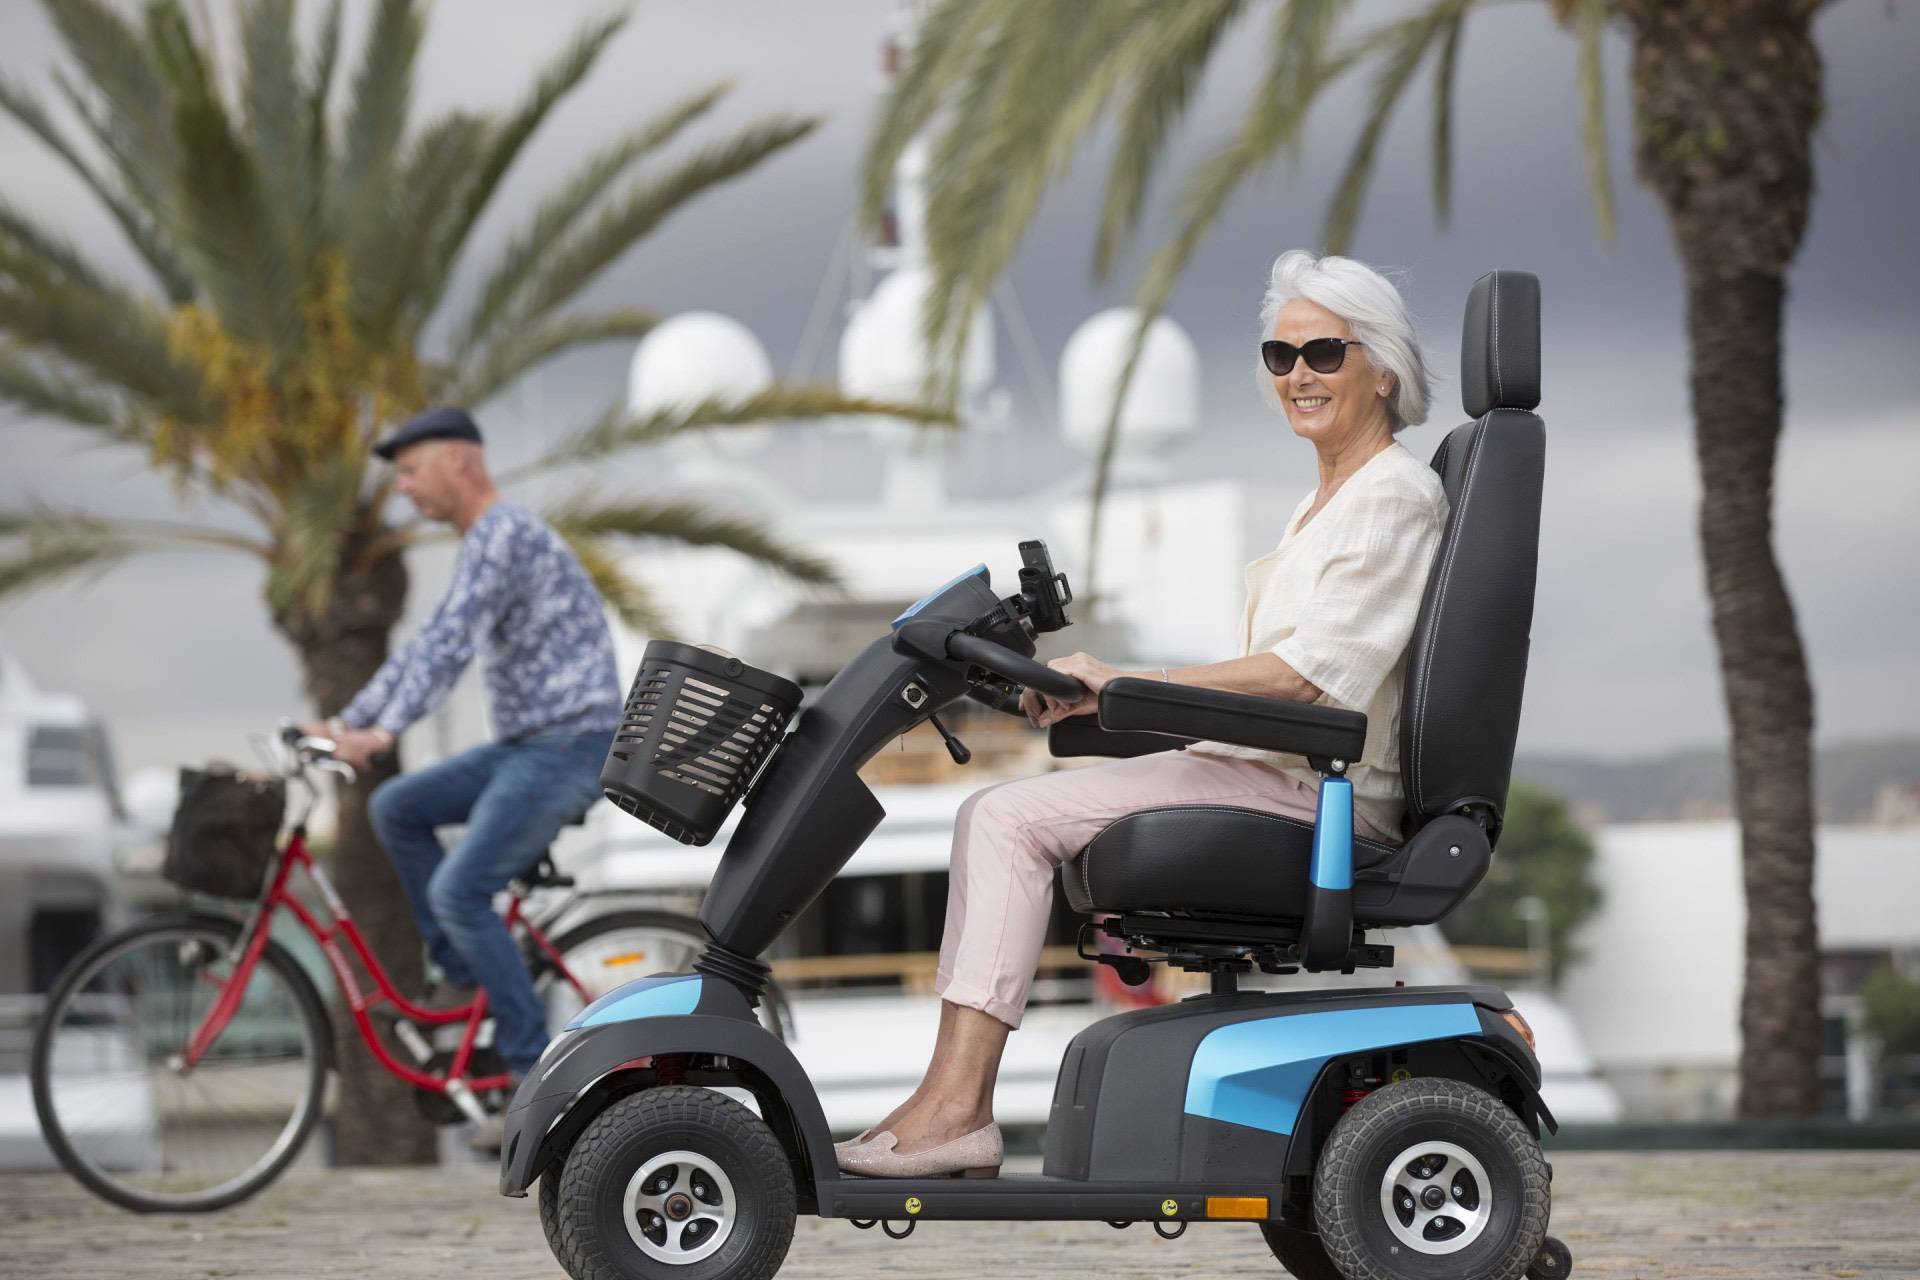 Comprar scooter eléctrico grande para minusvalidos y discapacitados